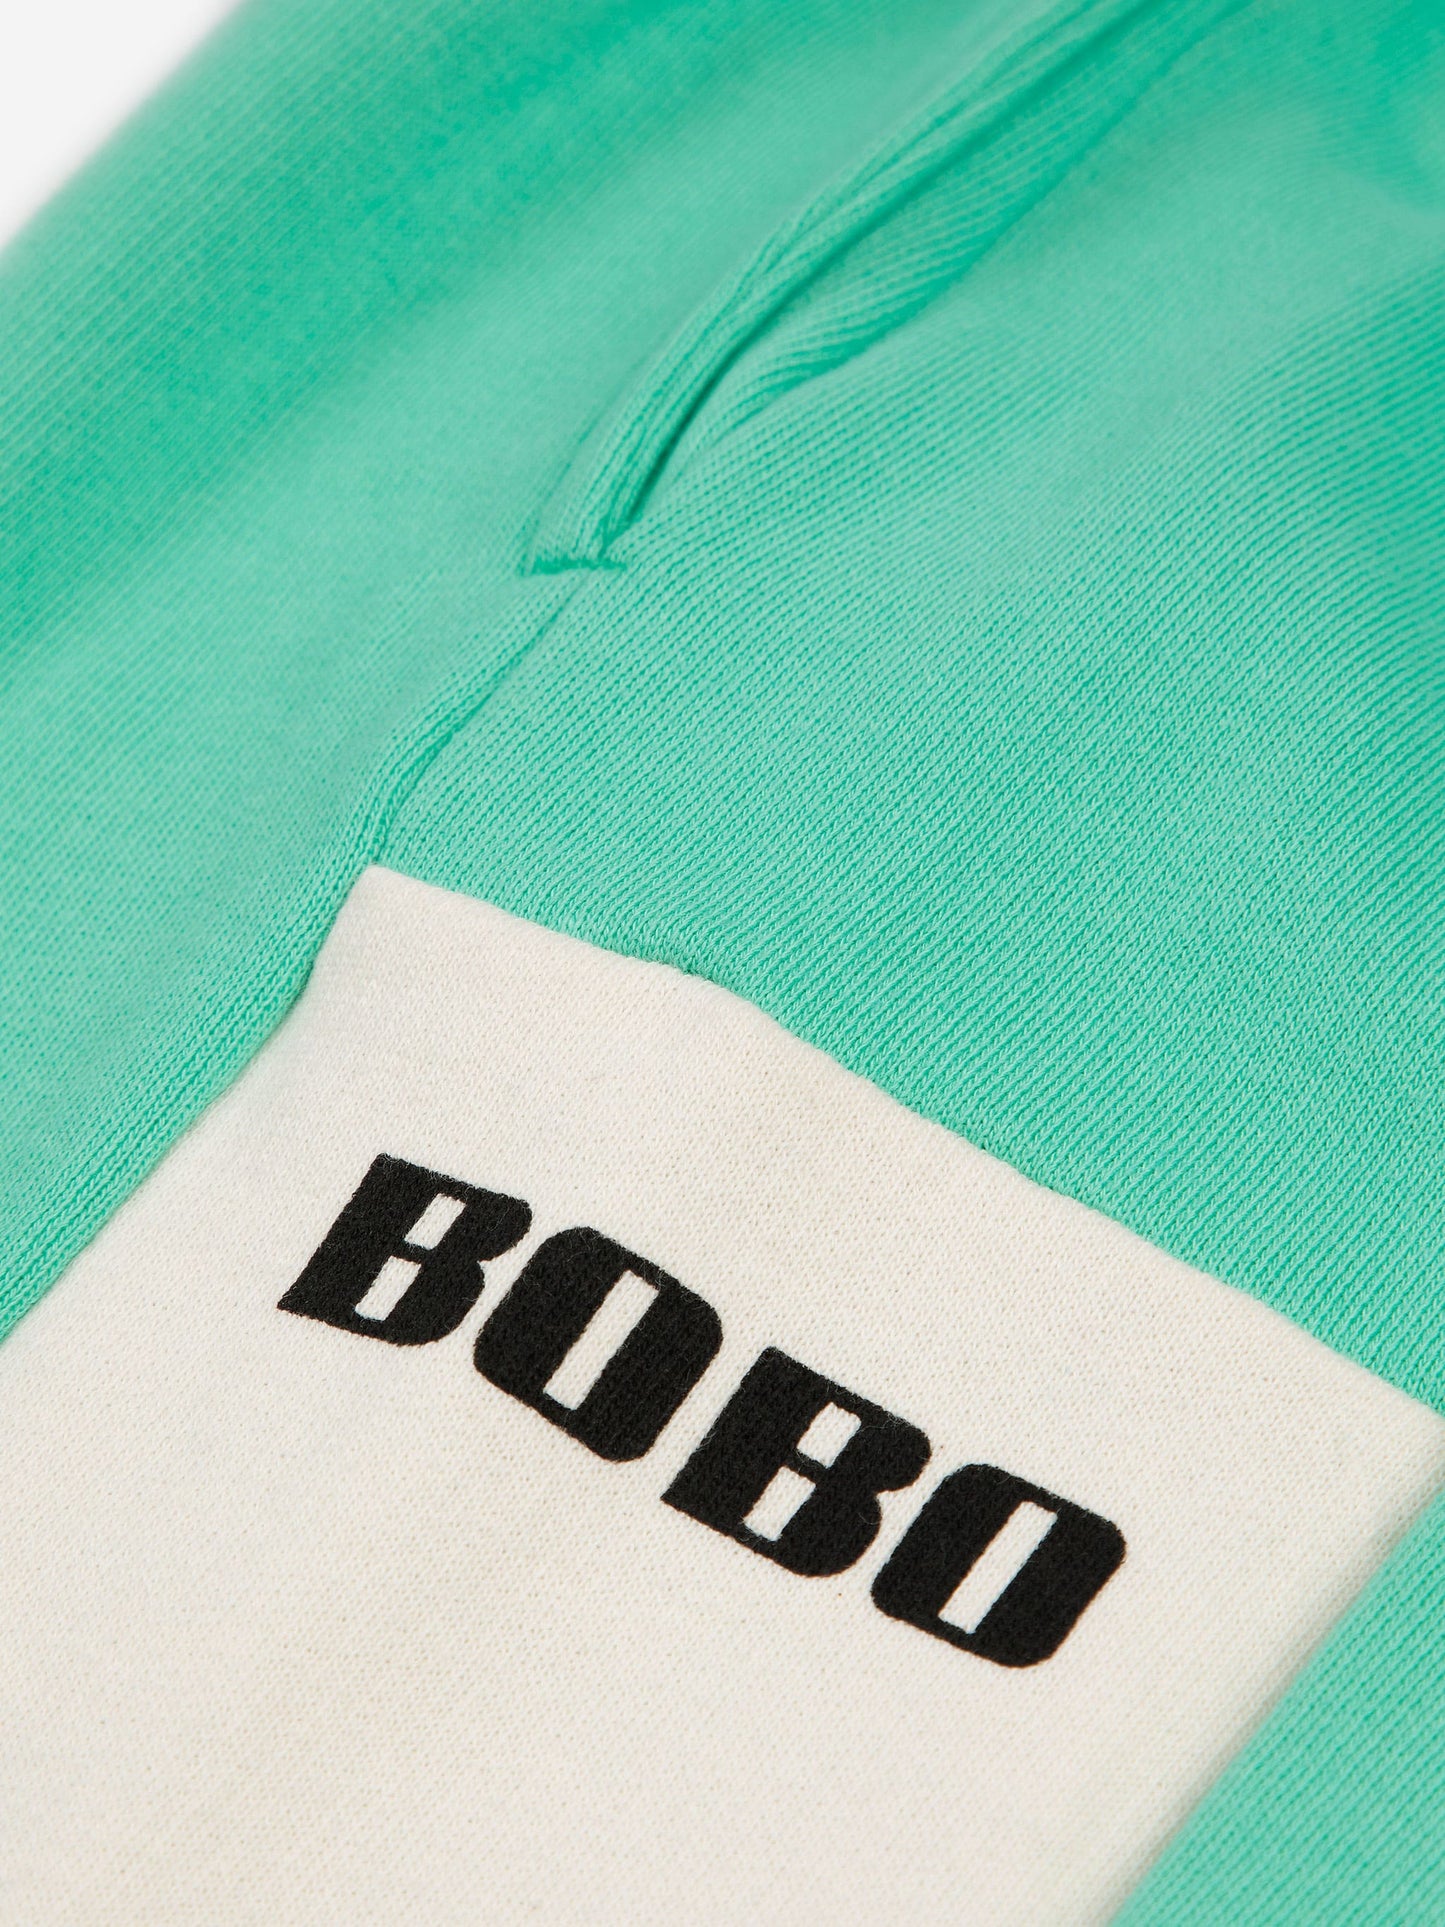 Pantalons de xandall Bobo blocs de color